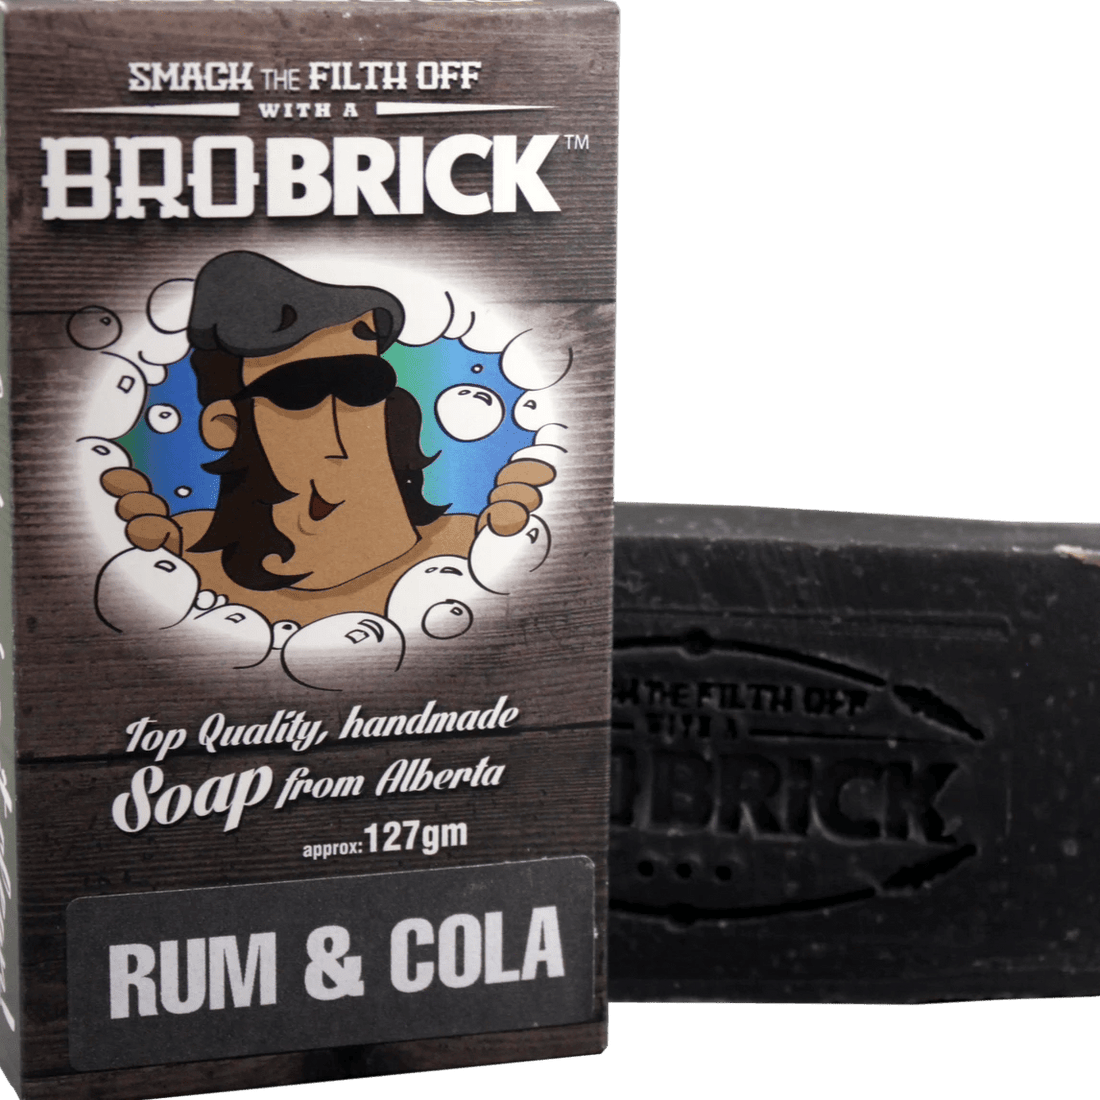 Bro Brick Soap - Rum & Cola - avg/ea - Forage Market - Bro Brick